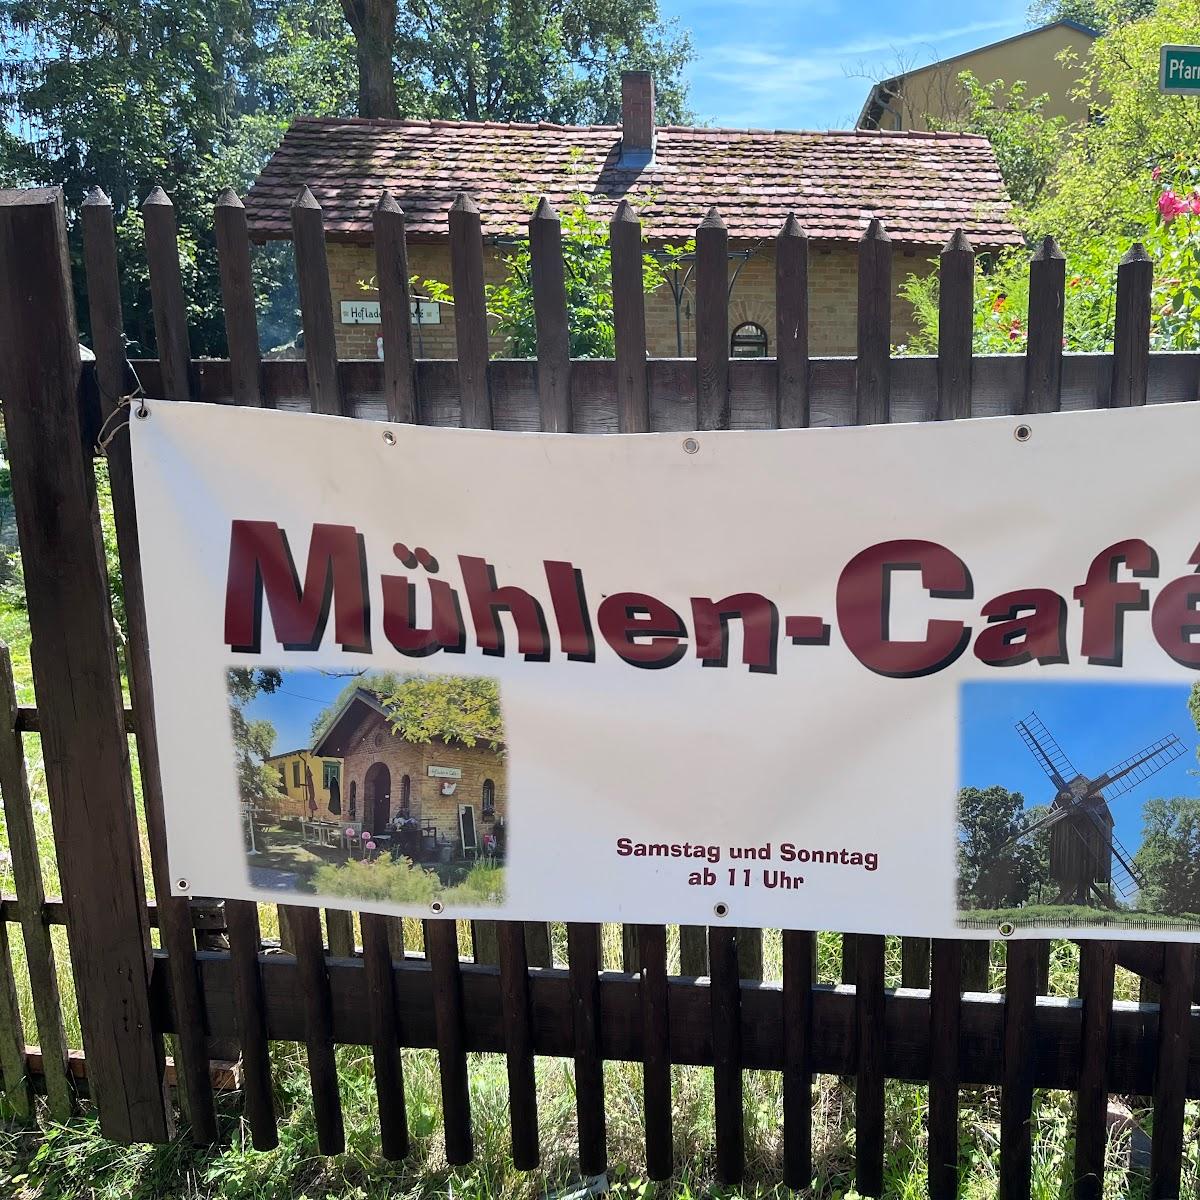 Restaurant "Mühlen-Cafe" in Berlin